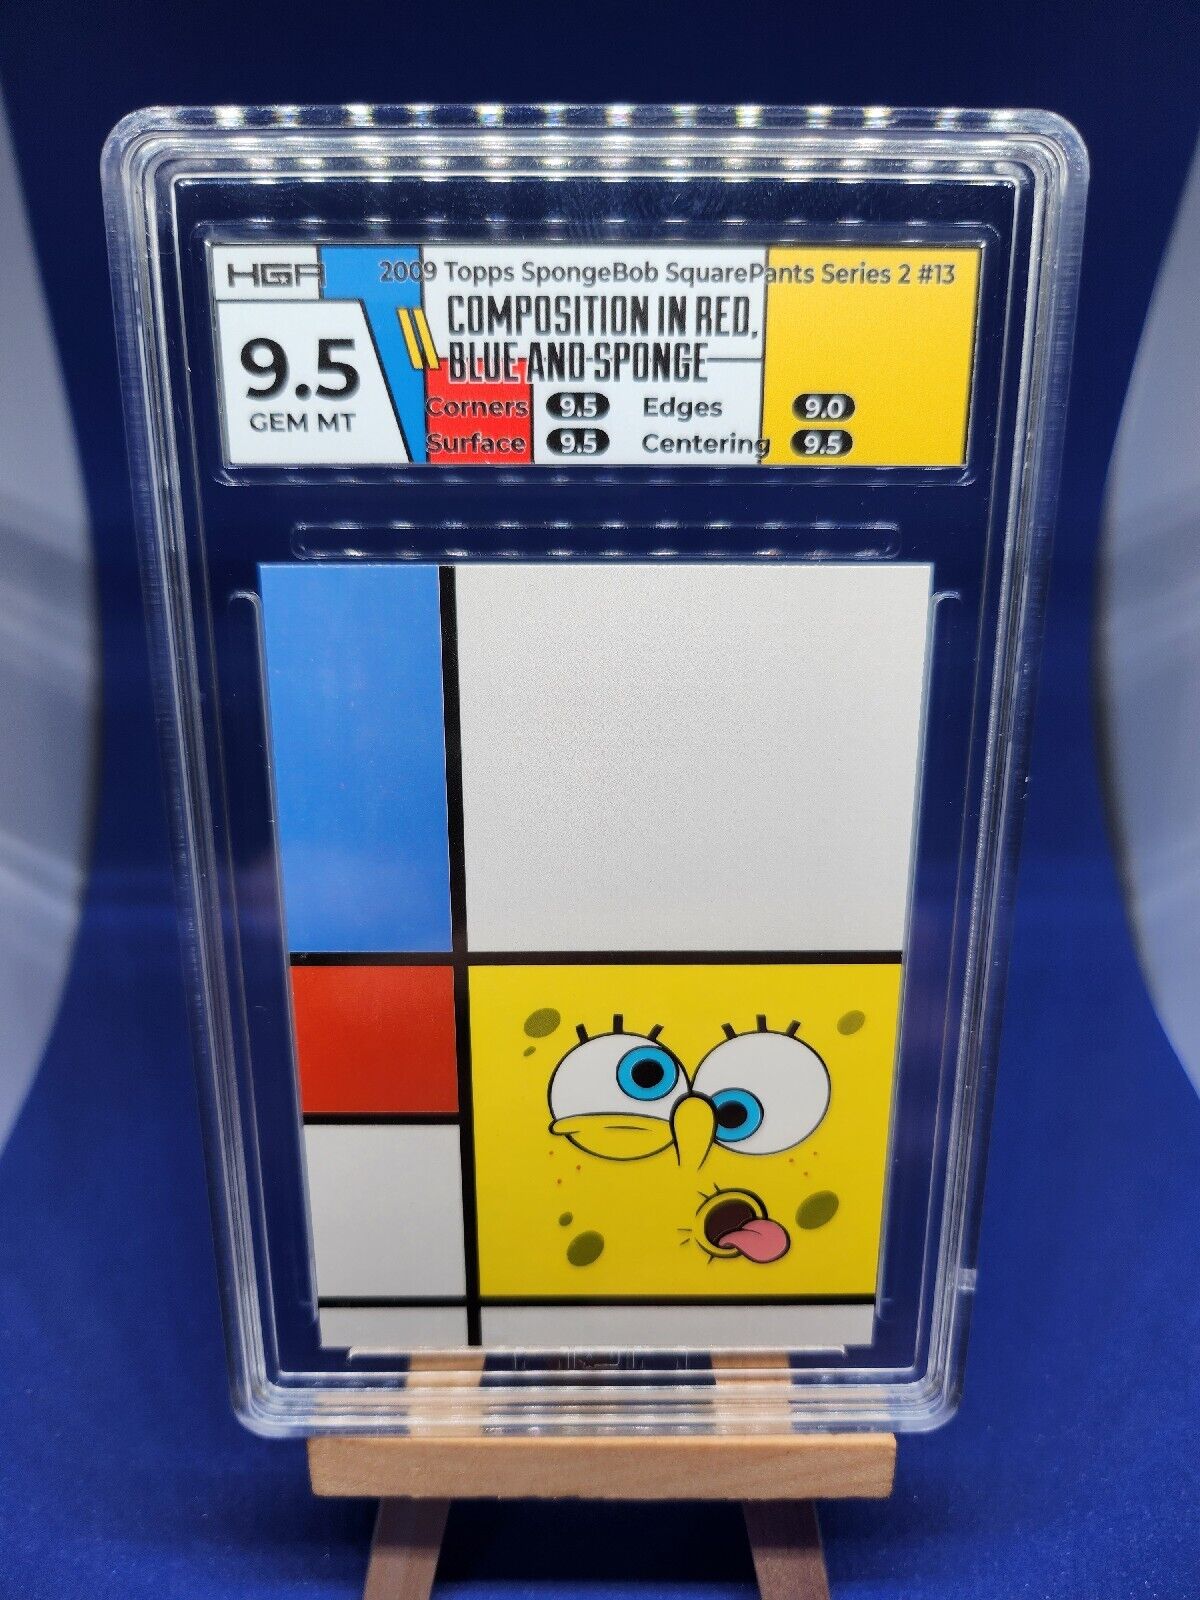 2009 Topps SpongeBob Composition Red Blue And Sponge SSP HGA 9.5 GEM eBay POP 1